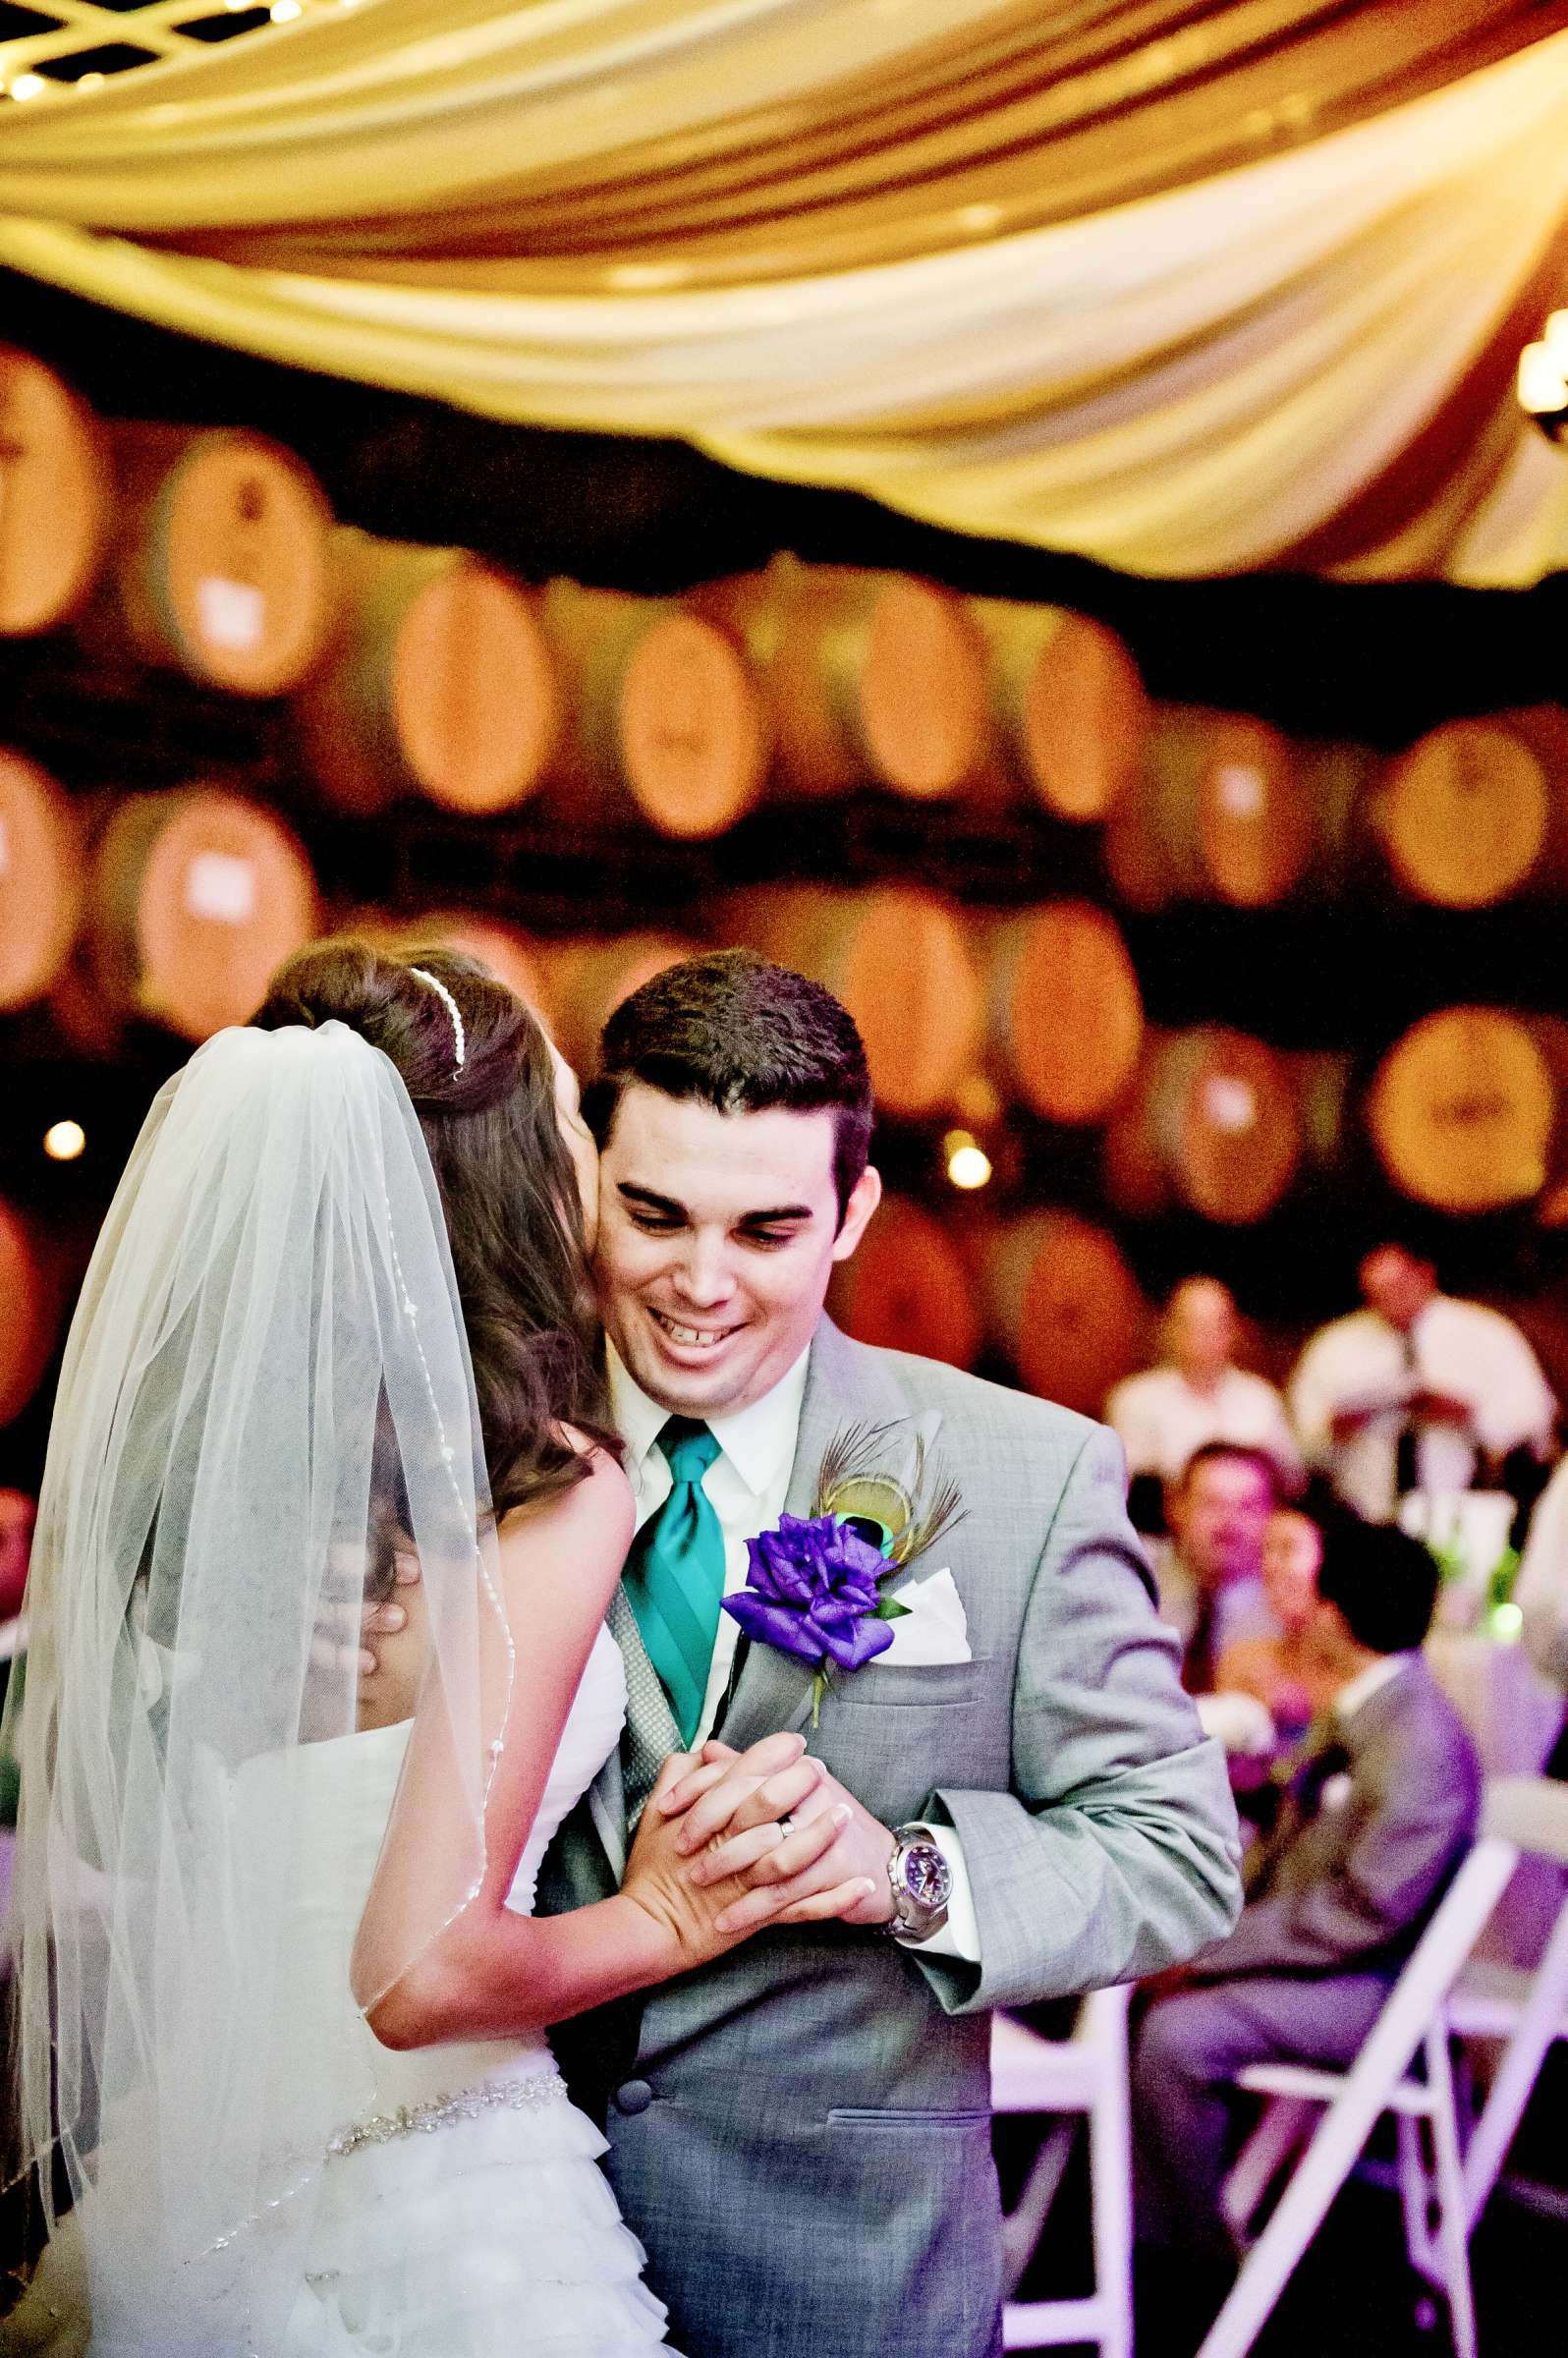 Mount Palomar Winery Wedding, Brandi and Jason Wedding Photo #321686 by True Photography